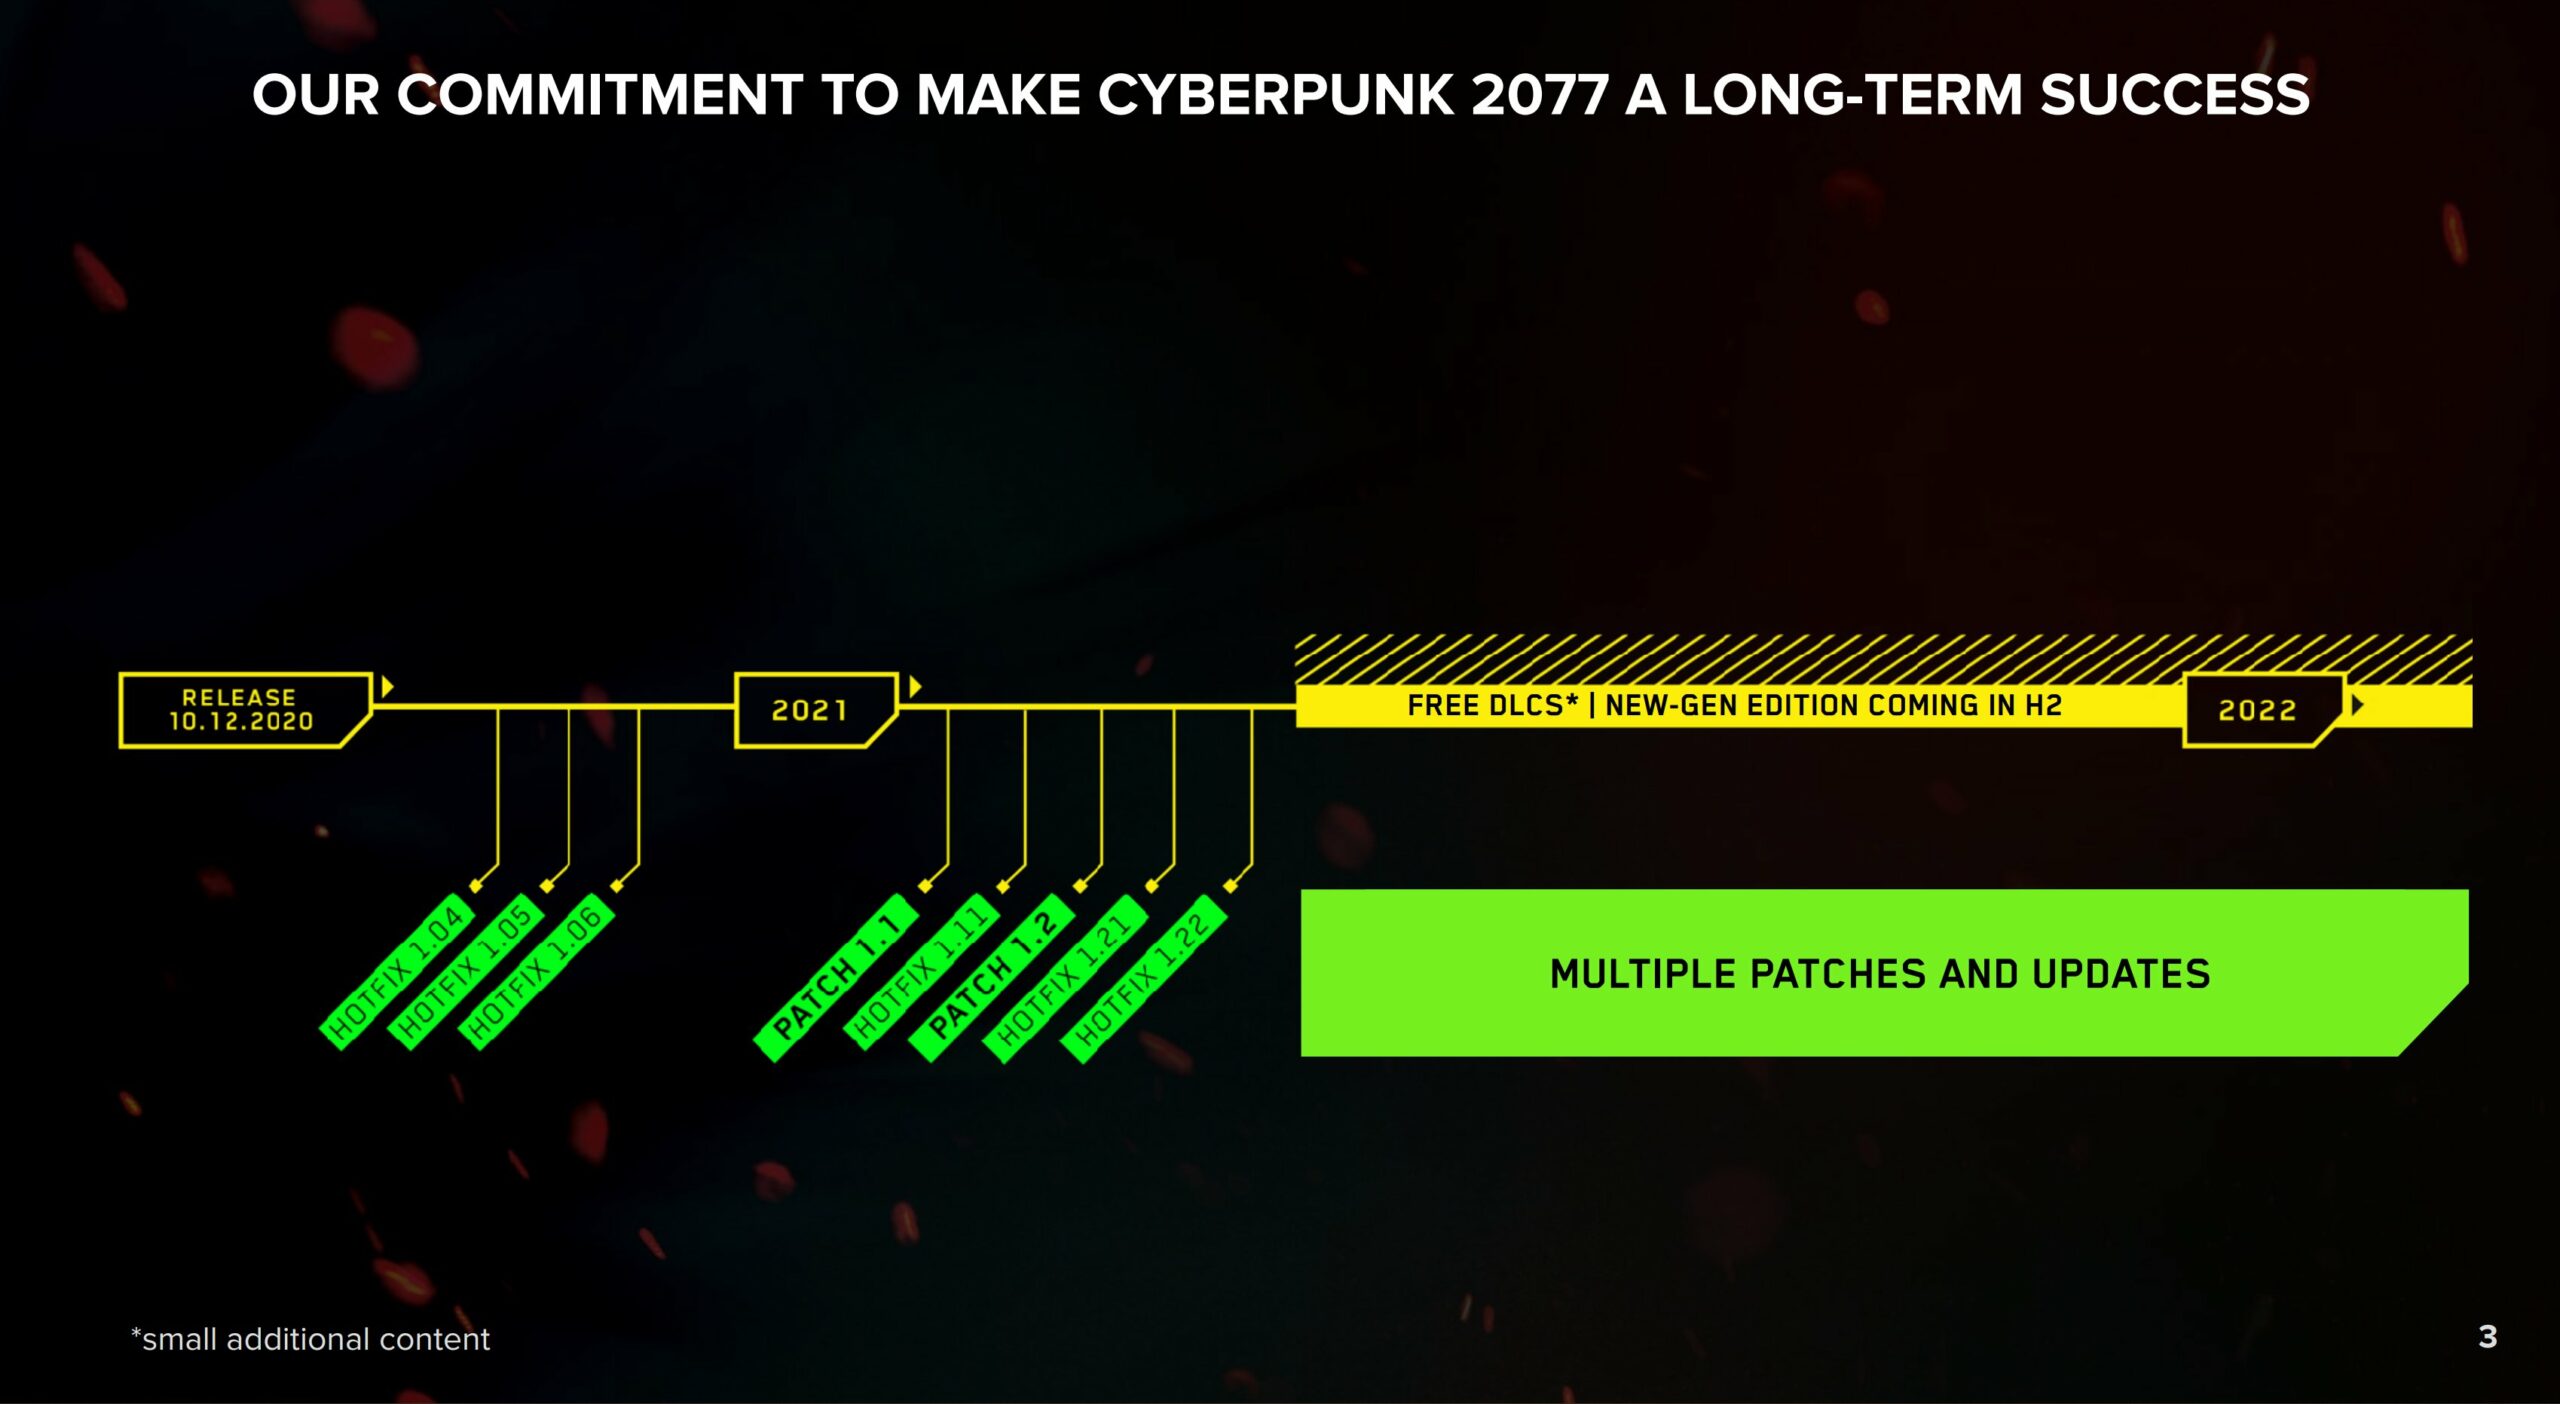 CD Projekt Cyberpunk 2077 roadmap